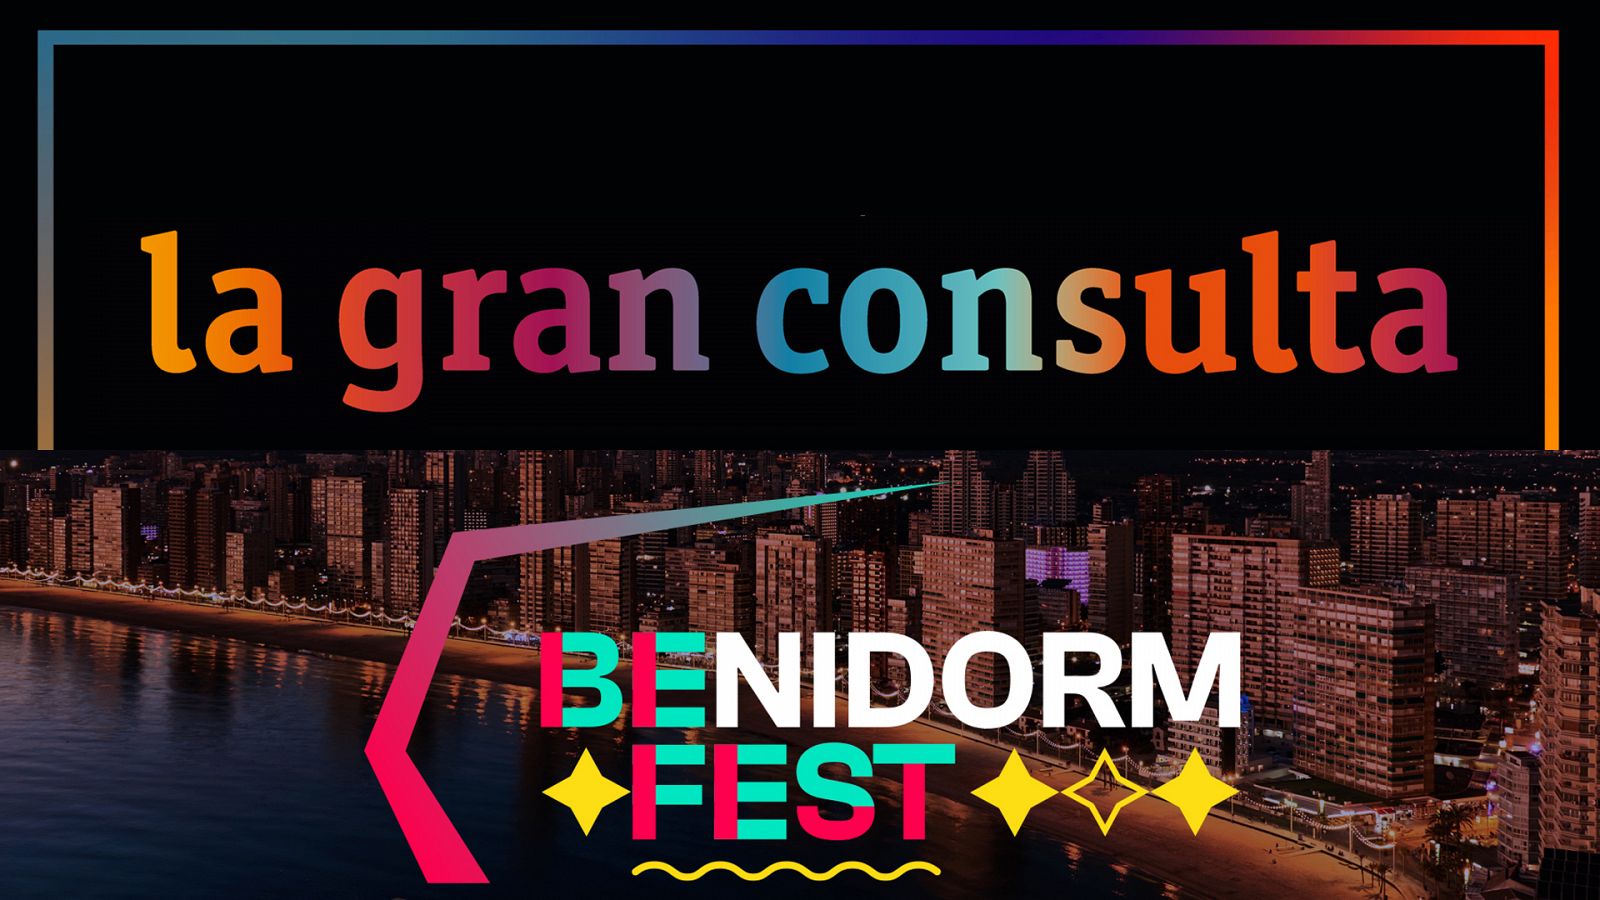  Logos de La gran consulta y el Benidorm Fest